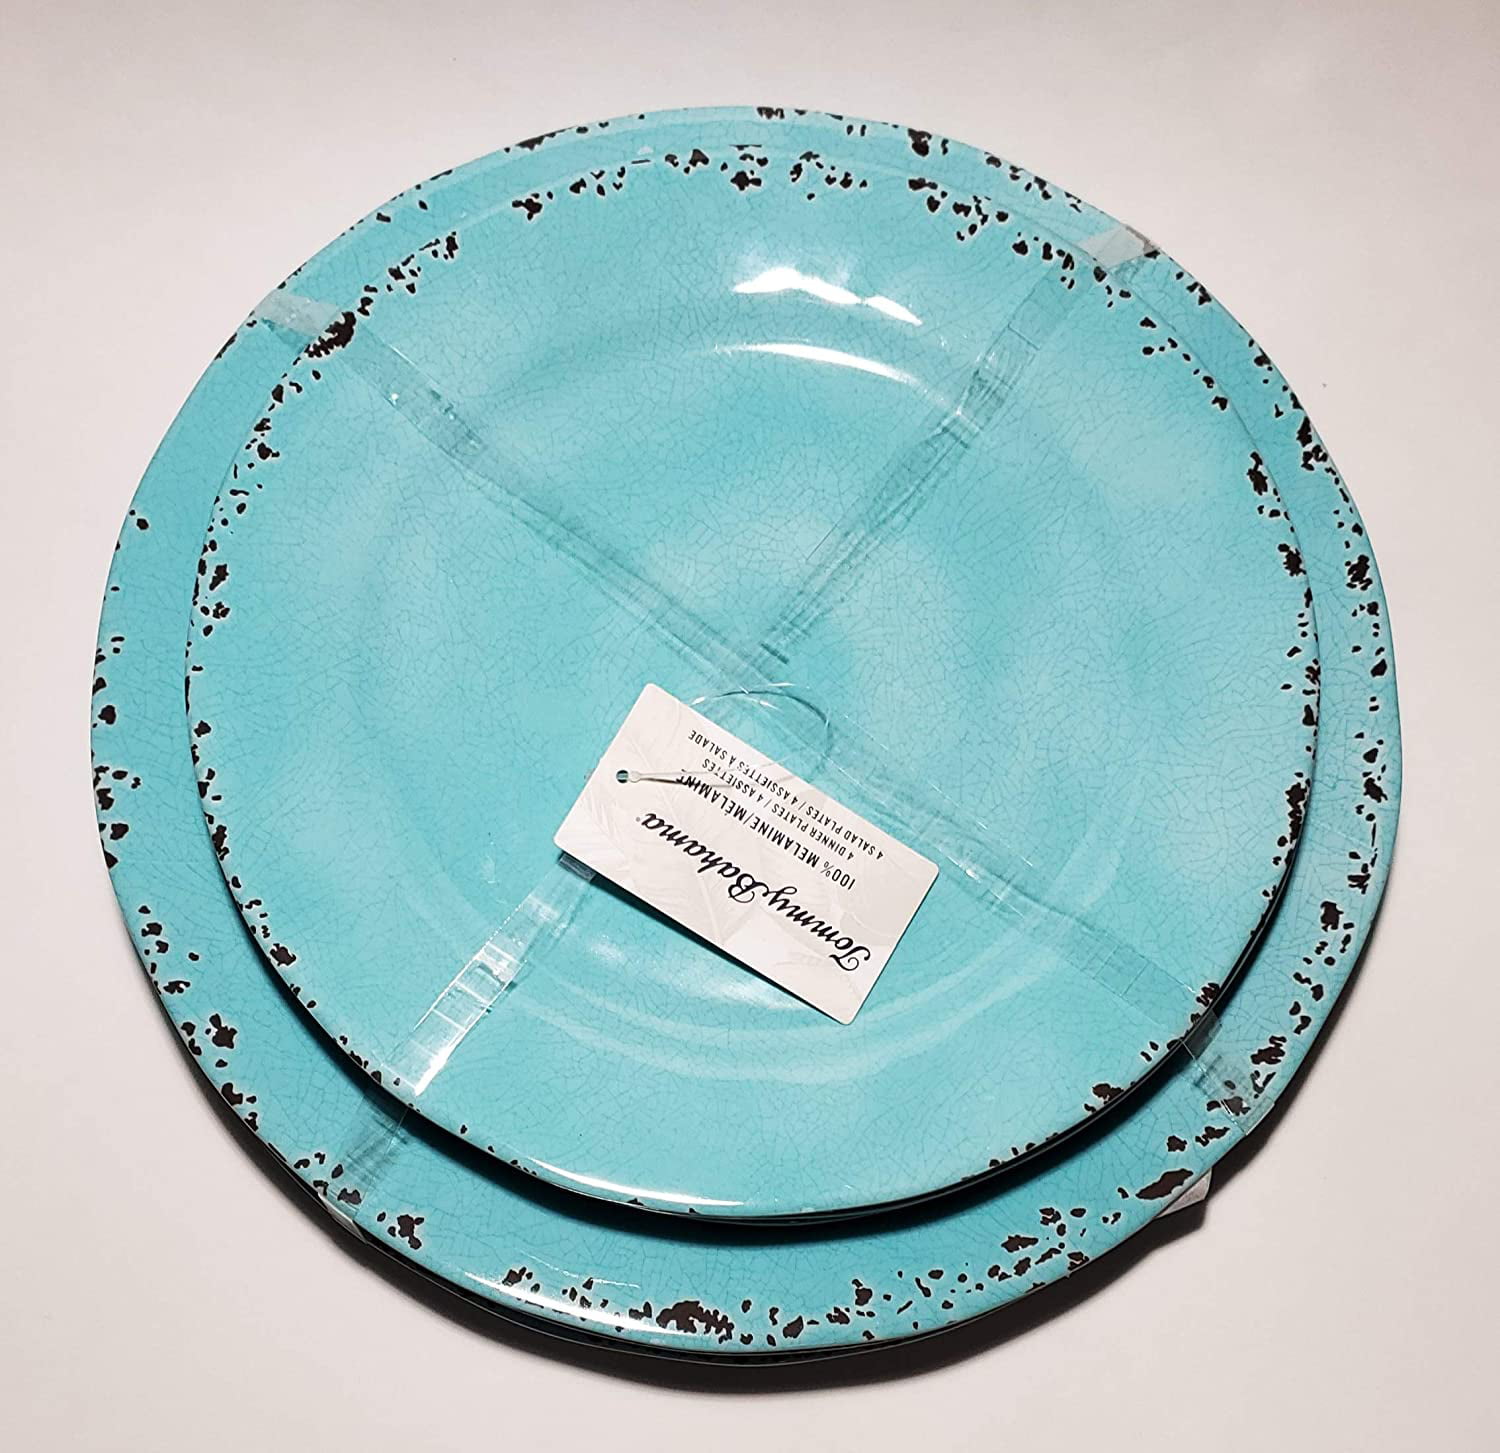 Tommy Bahama Blue Rustic Crackled Melamine Serving Platter & Serving Utensils 